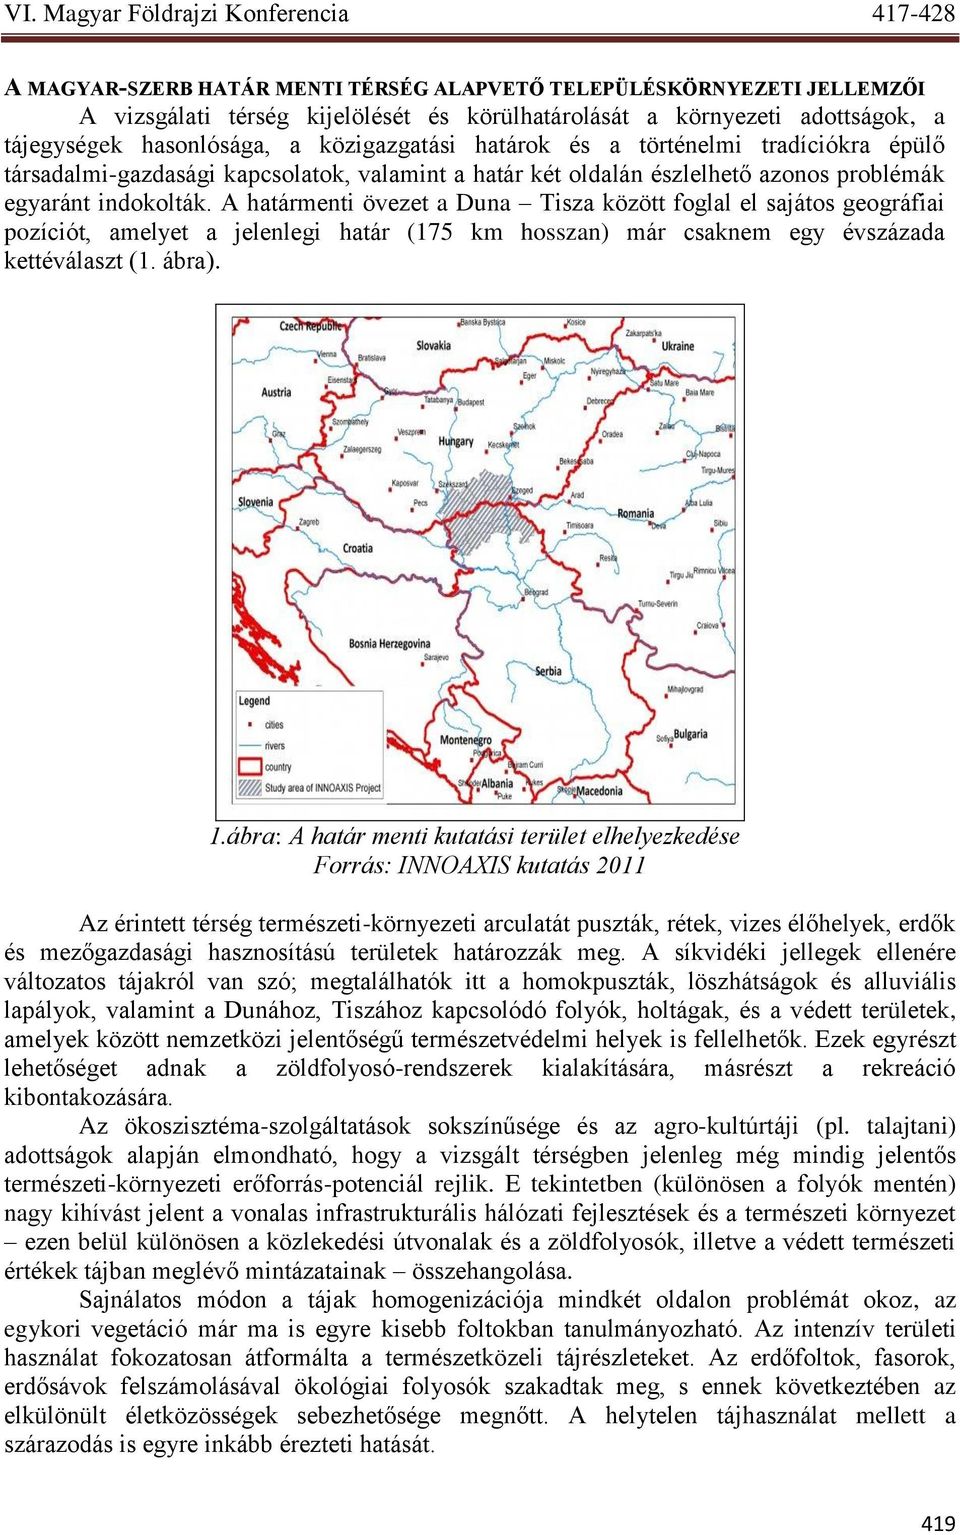 A határmenti övezet a Duna Tisza között foglal el sajátos geográfiai pozíciót, amelyet a jelenlegi határ (175 km hosszan) már csaknem egy évszázada kettéválaszt (1. ábra). 1.